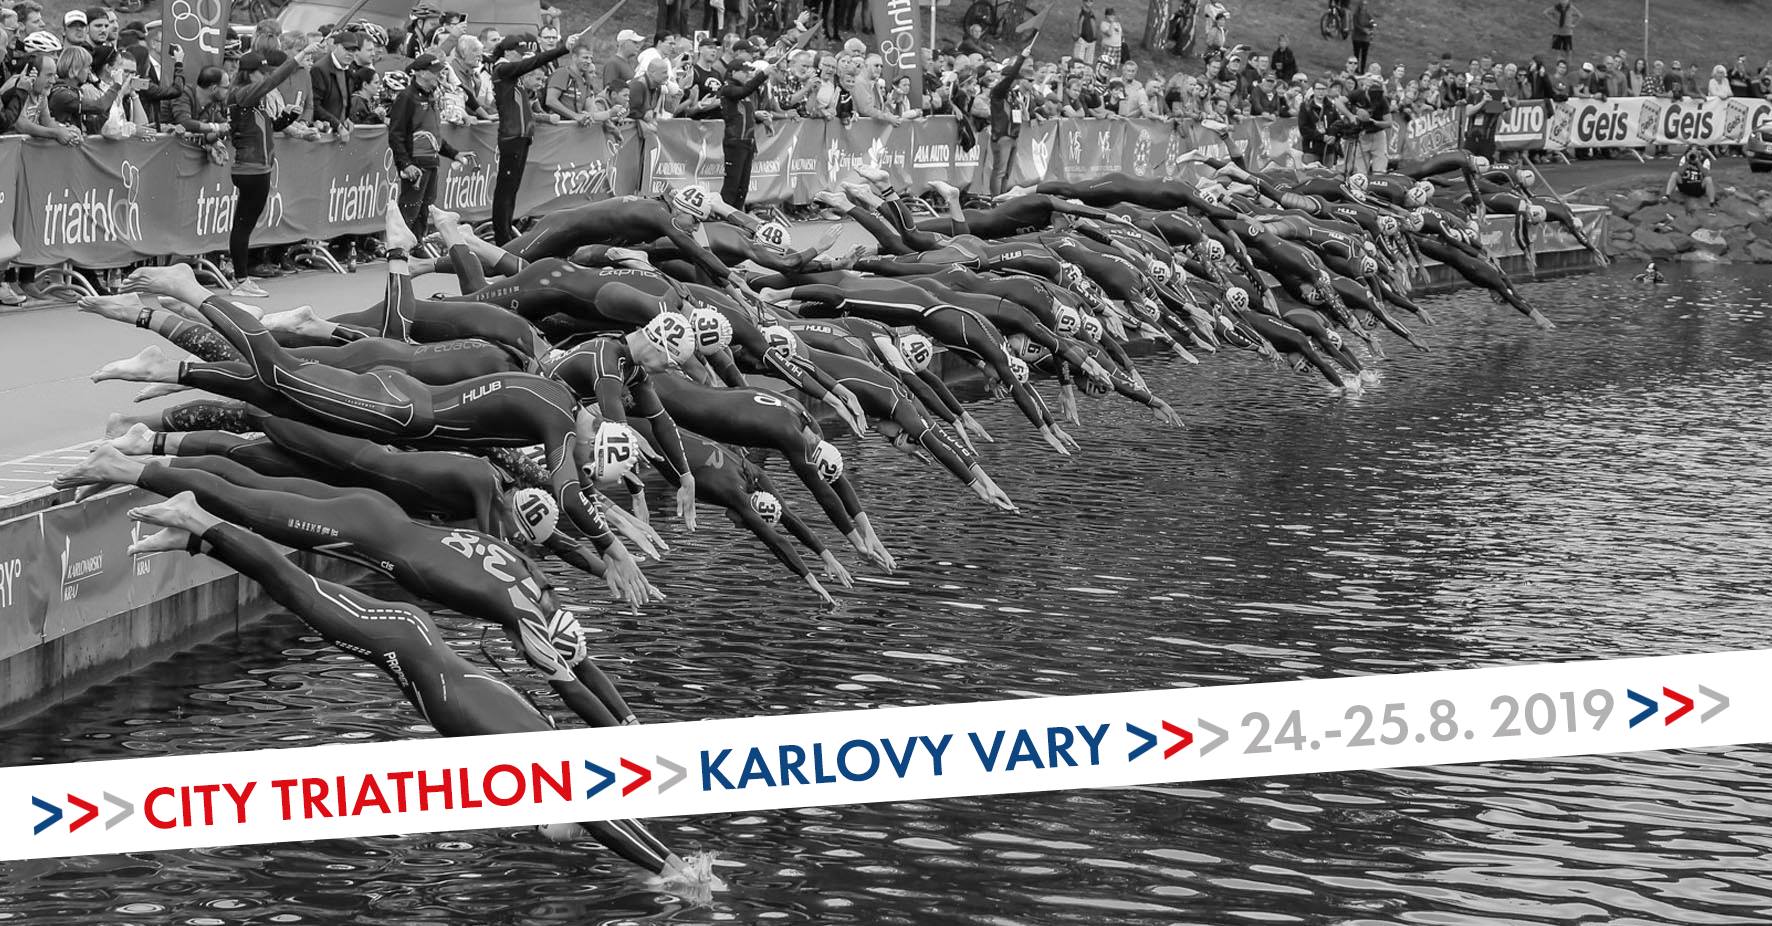 City Triathlon Karlovy Vary 2019 | Aktywer.pl